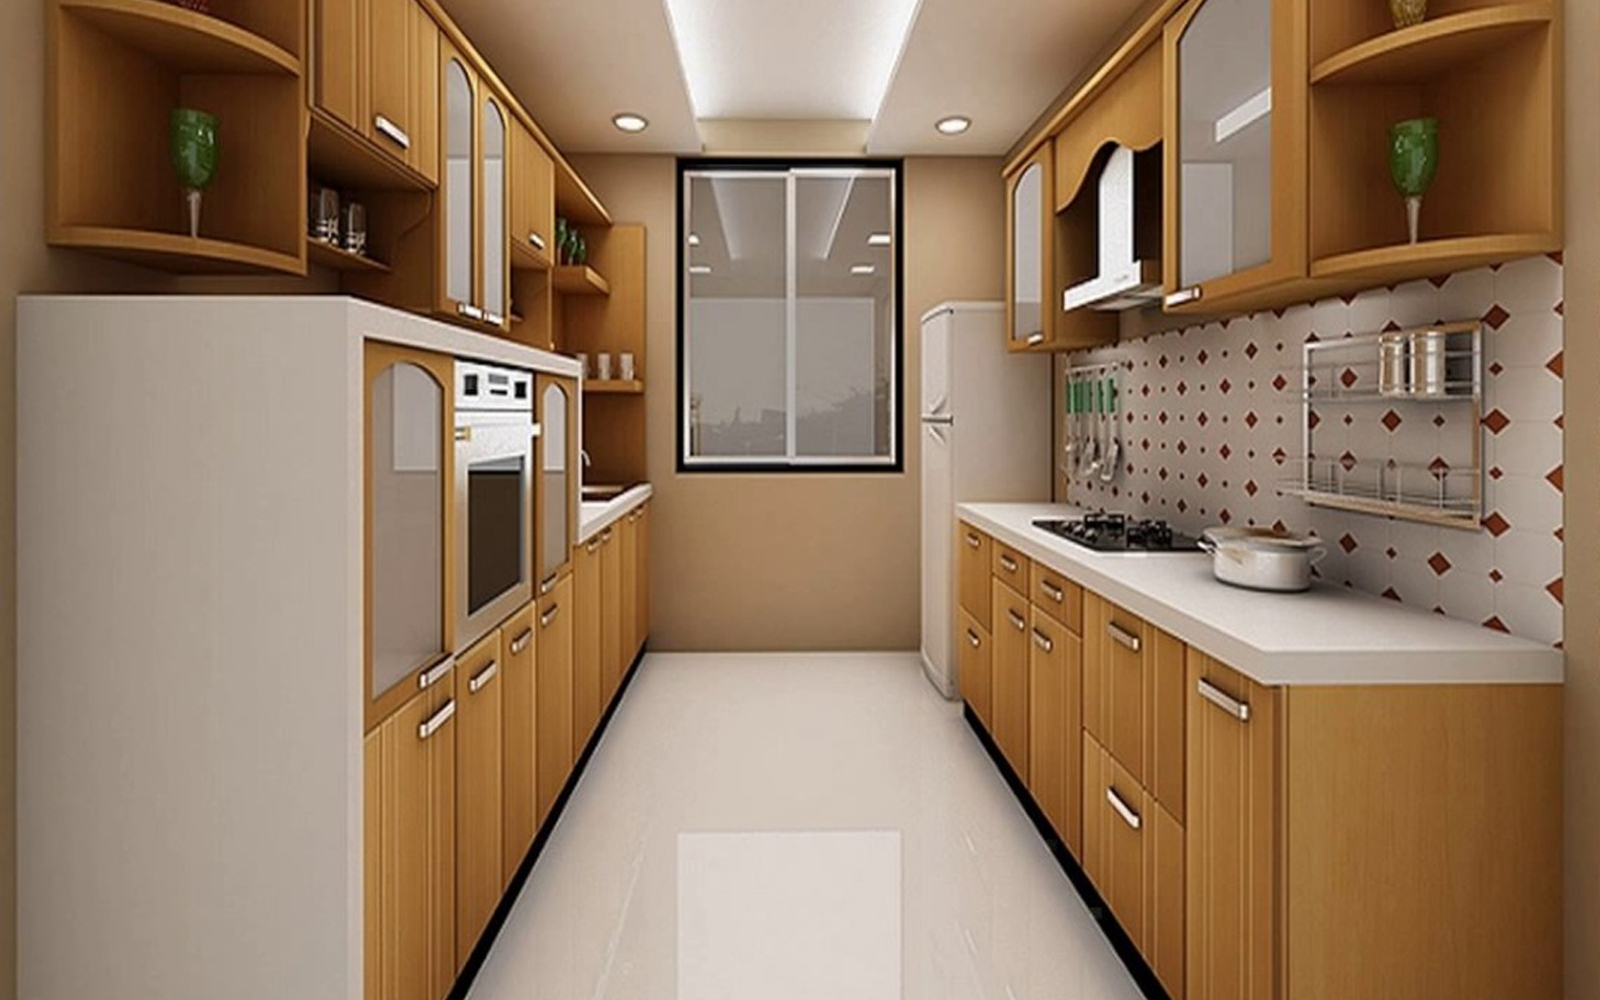 Parallel modular kitchen design
                                  